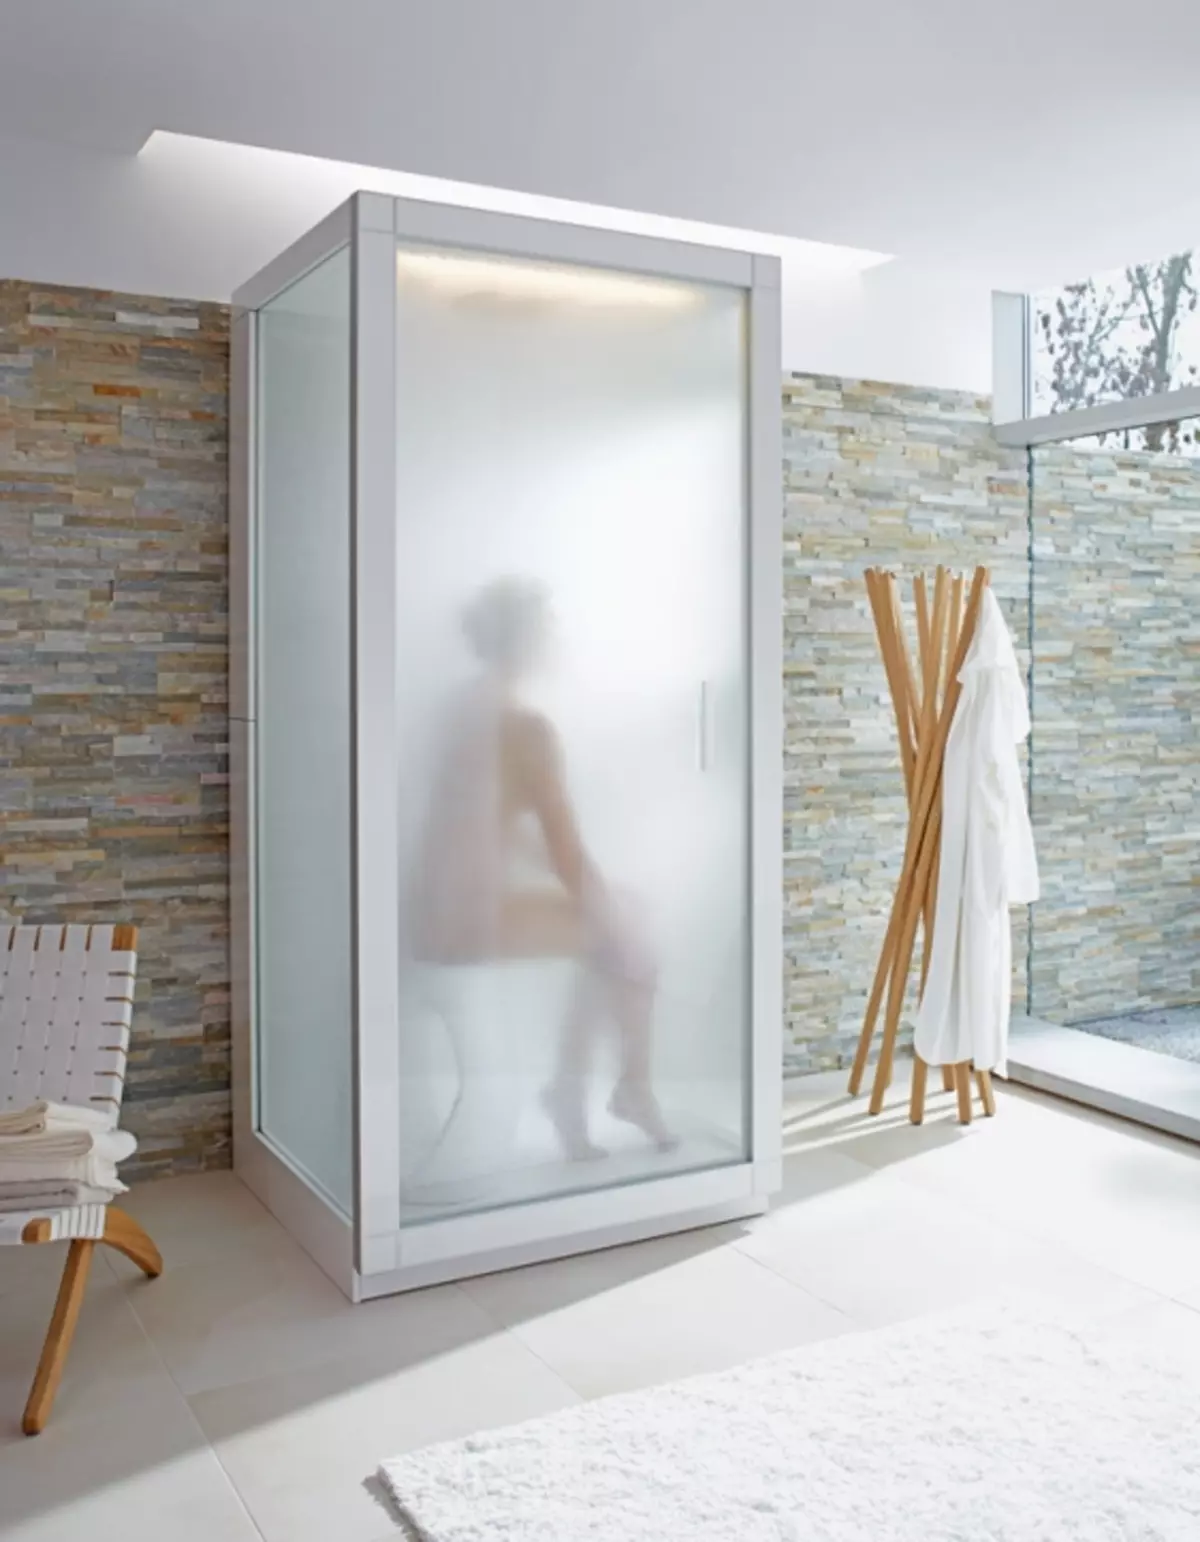 Cabina de dutxa amb generador de vapor: models amb bany de vapor turc i bany, amb sauna Hamam i finlandesa, altres opcions. Referentacions 10322_5